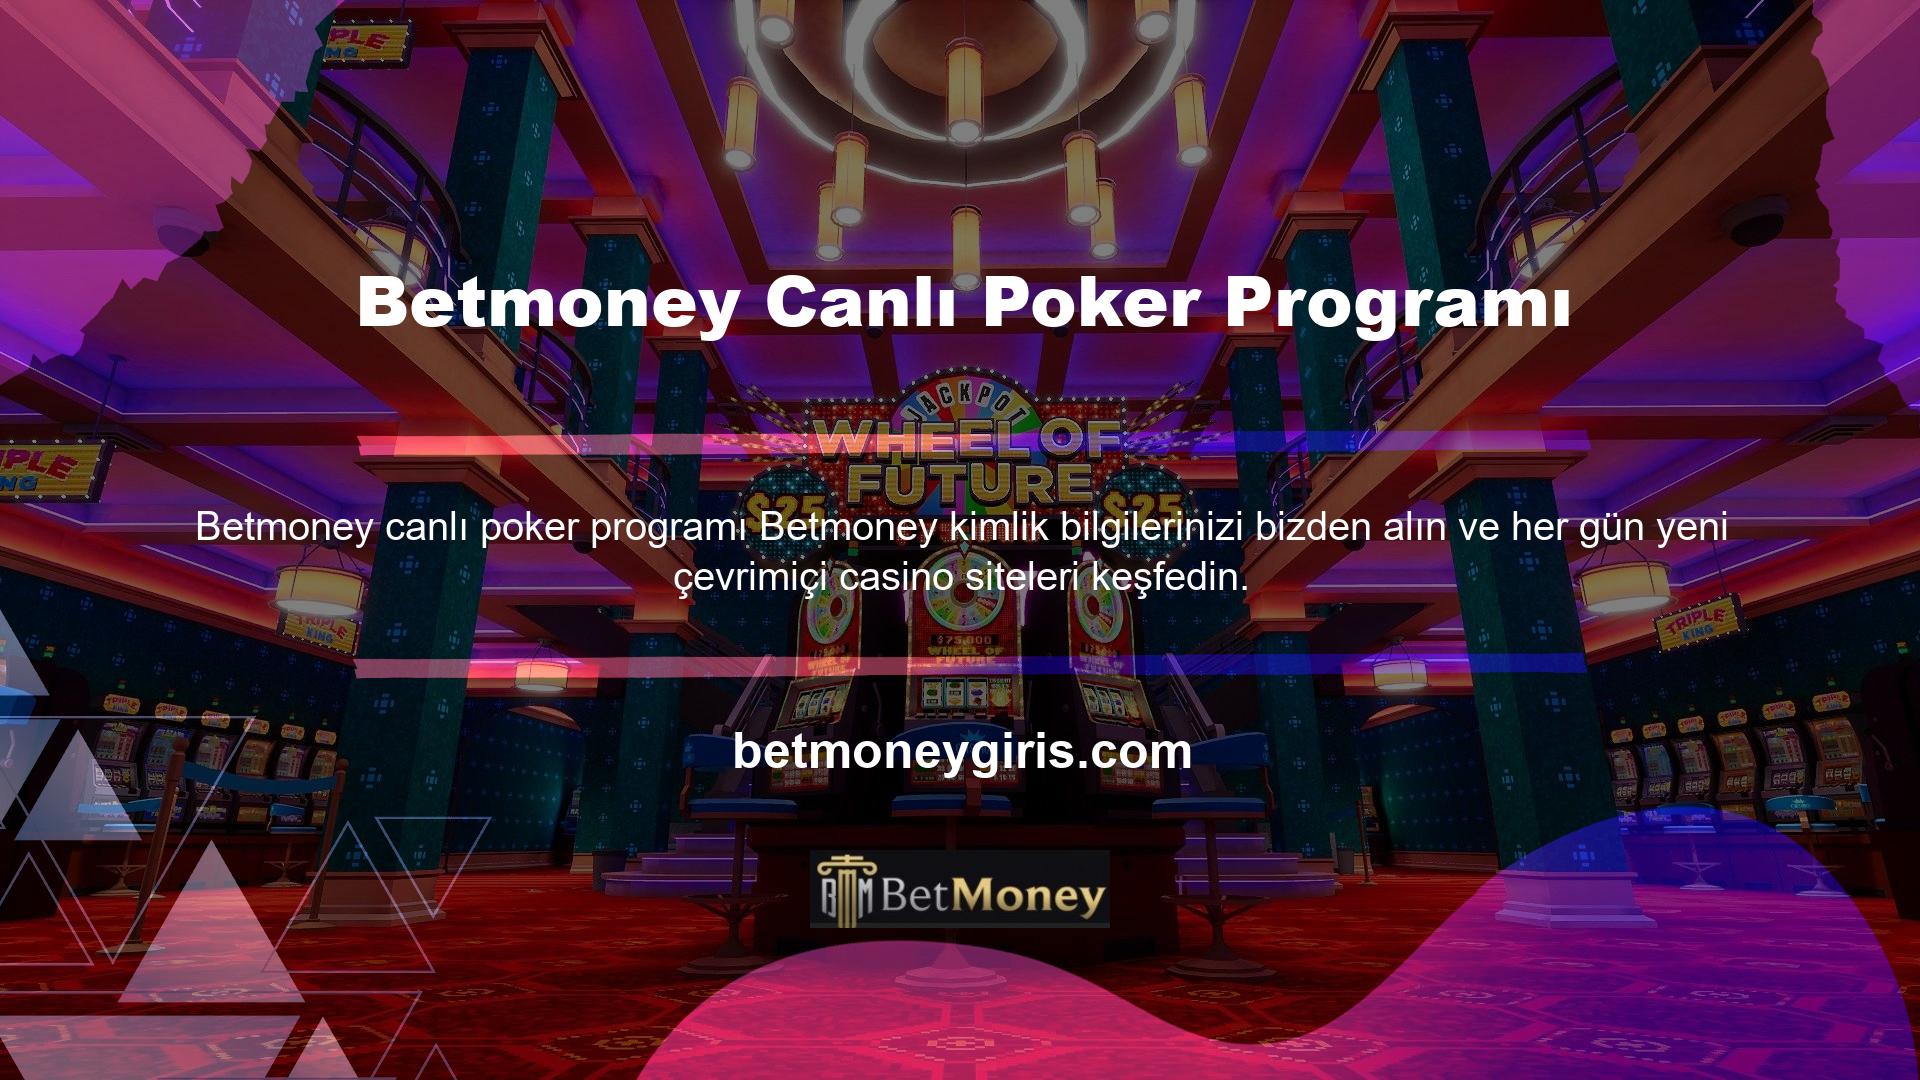 Ülkemiz oyunlarını ve casino oyunlarını sunan uluslararası online oyun sitesine Betmoney oyun sitesi eklendi